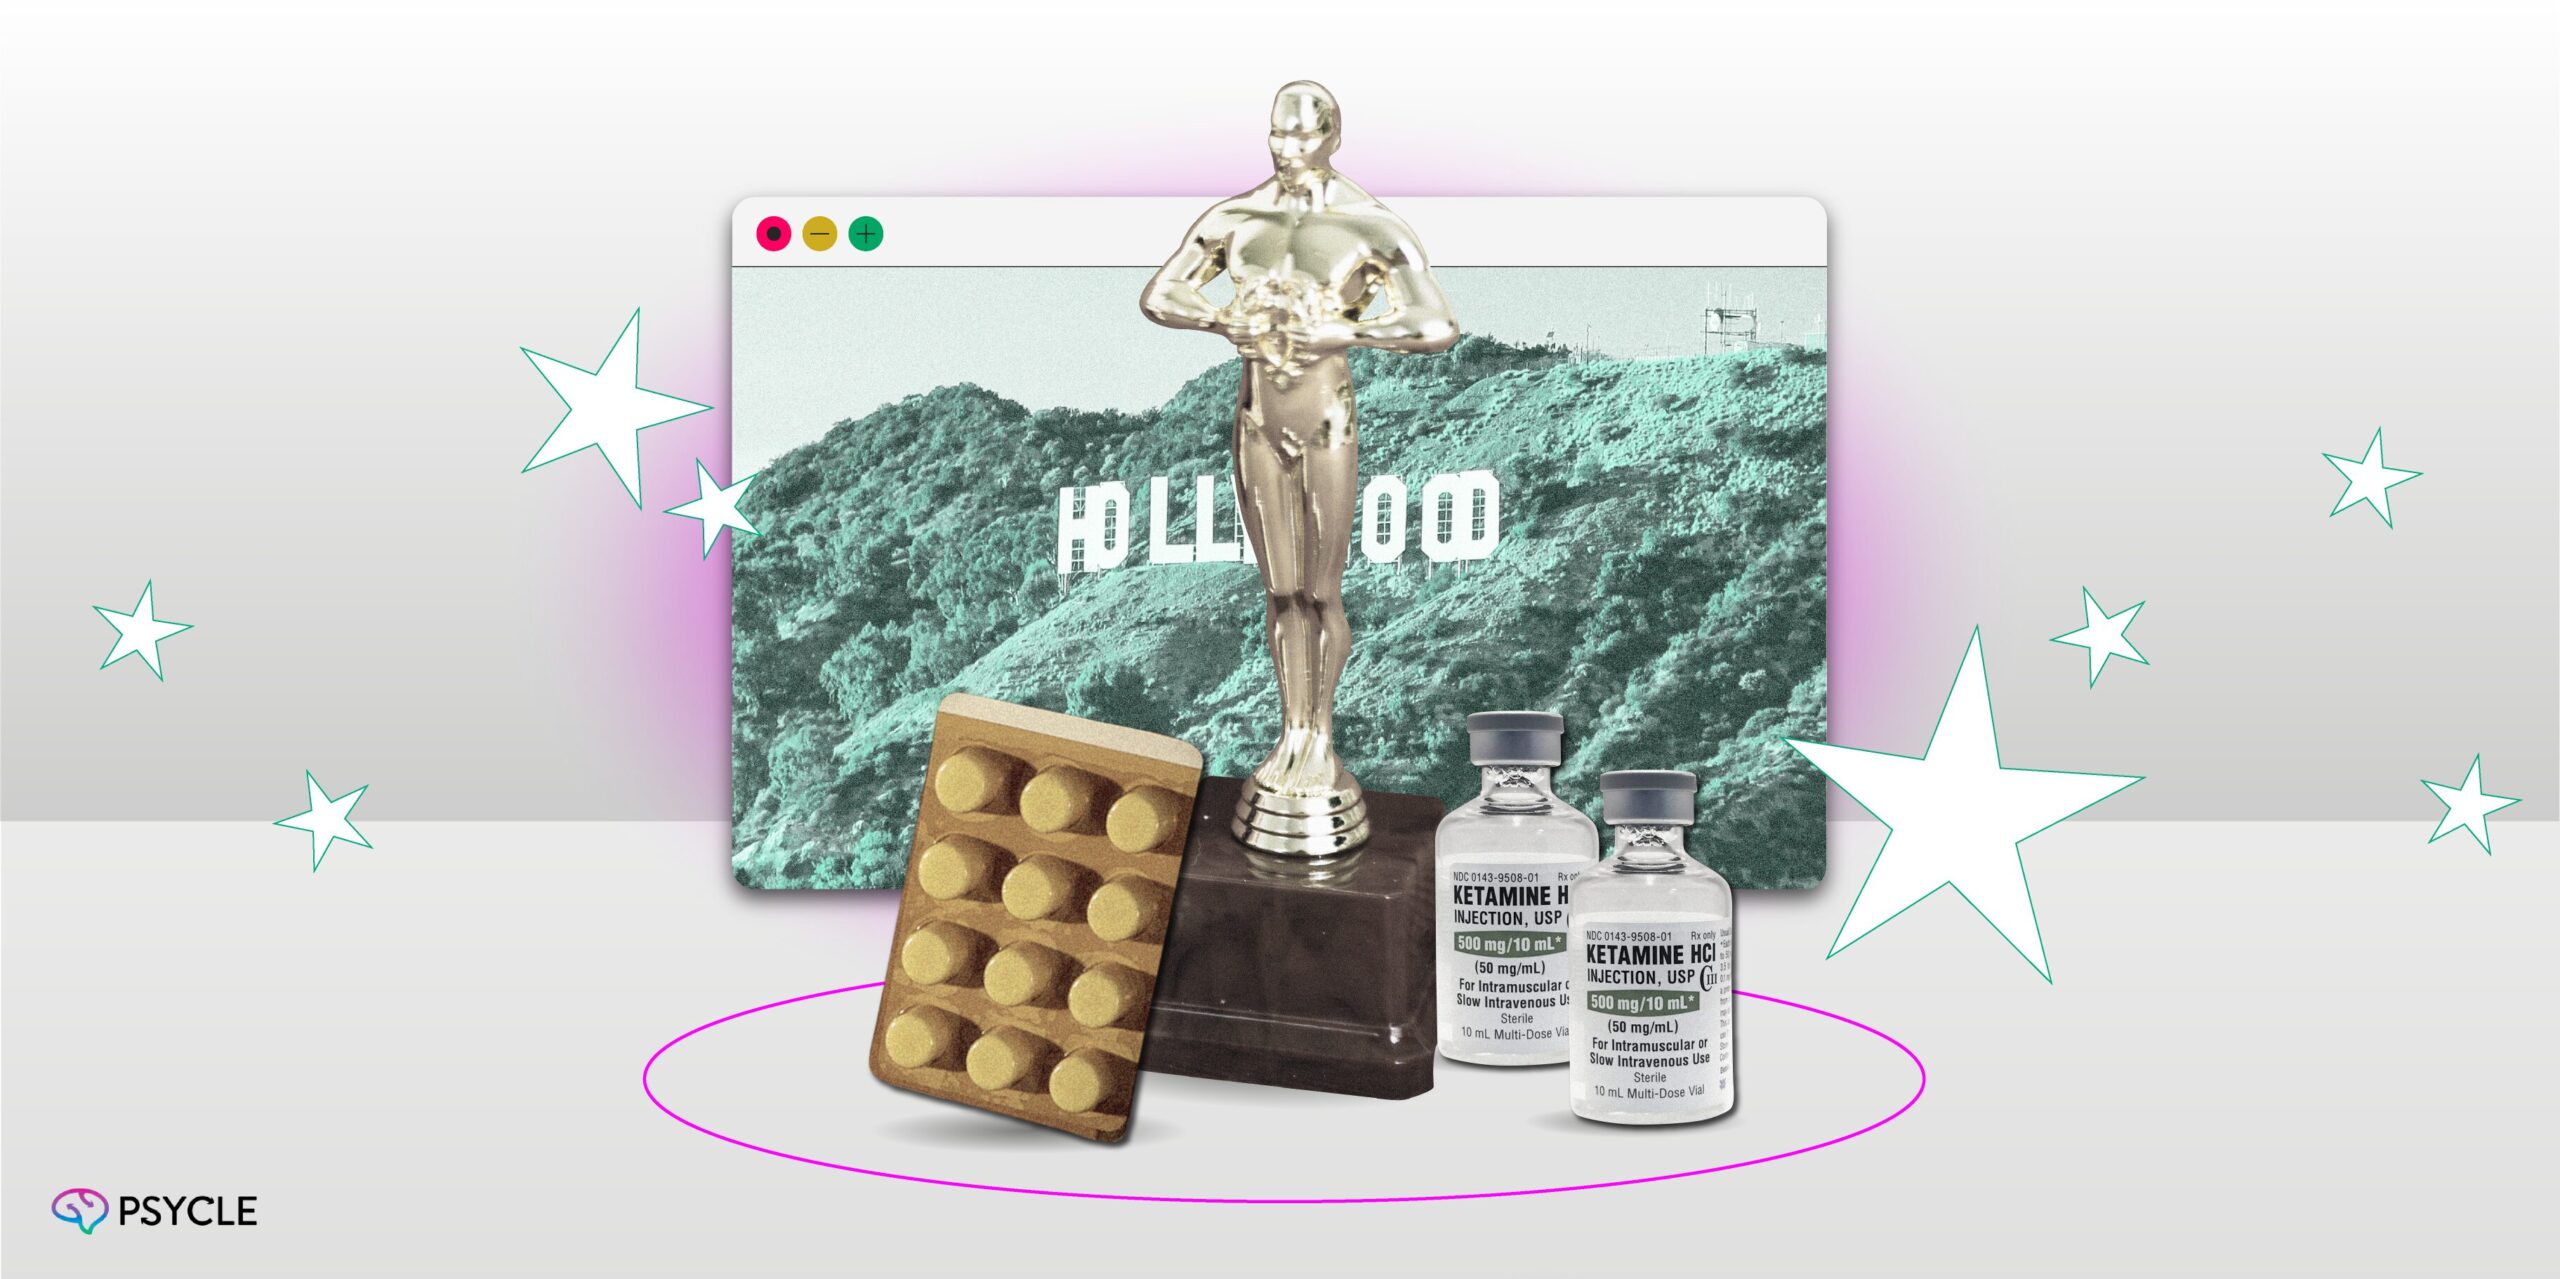 Ketamine pills, vials and an Oscar with Hollywood behind them.